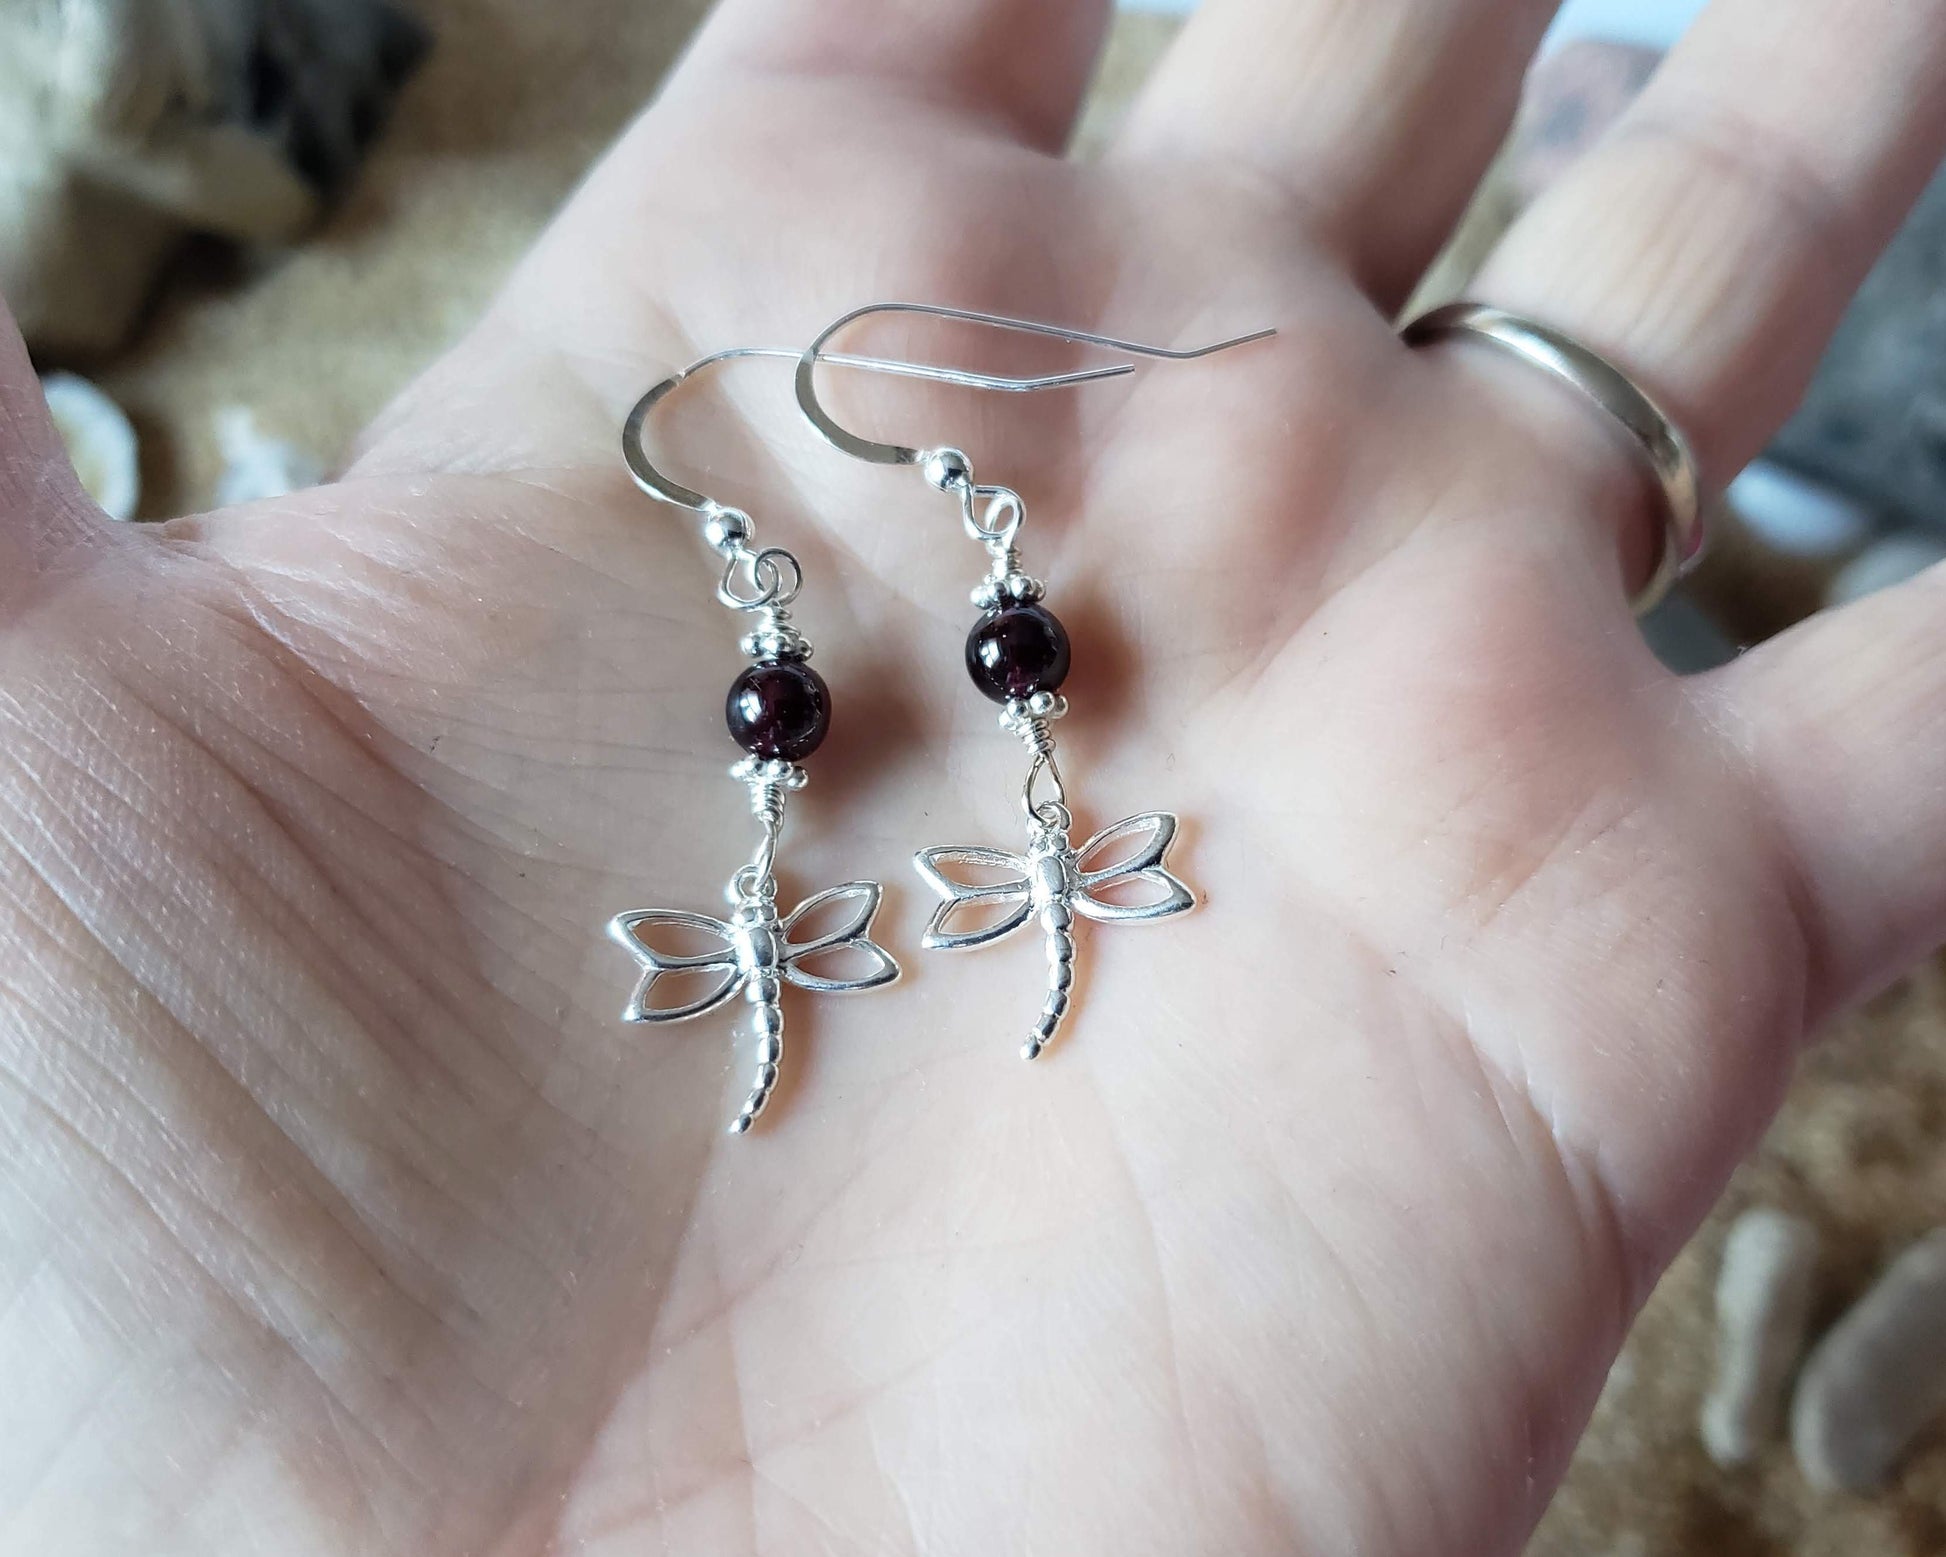 Dragonfly Garnet Delight Earrings, Sterling Silver earrings in hand